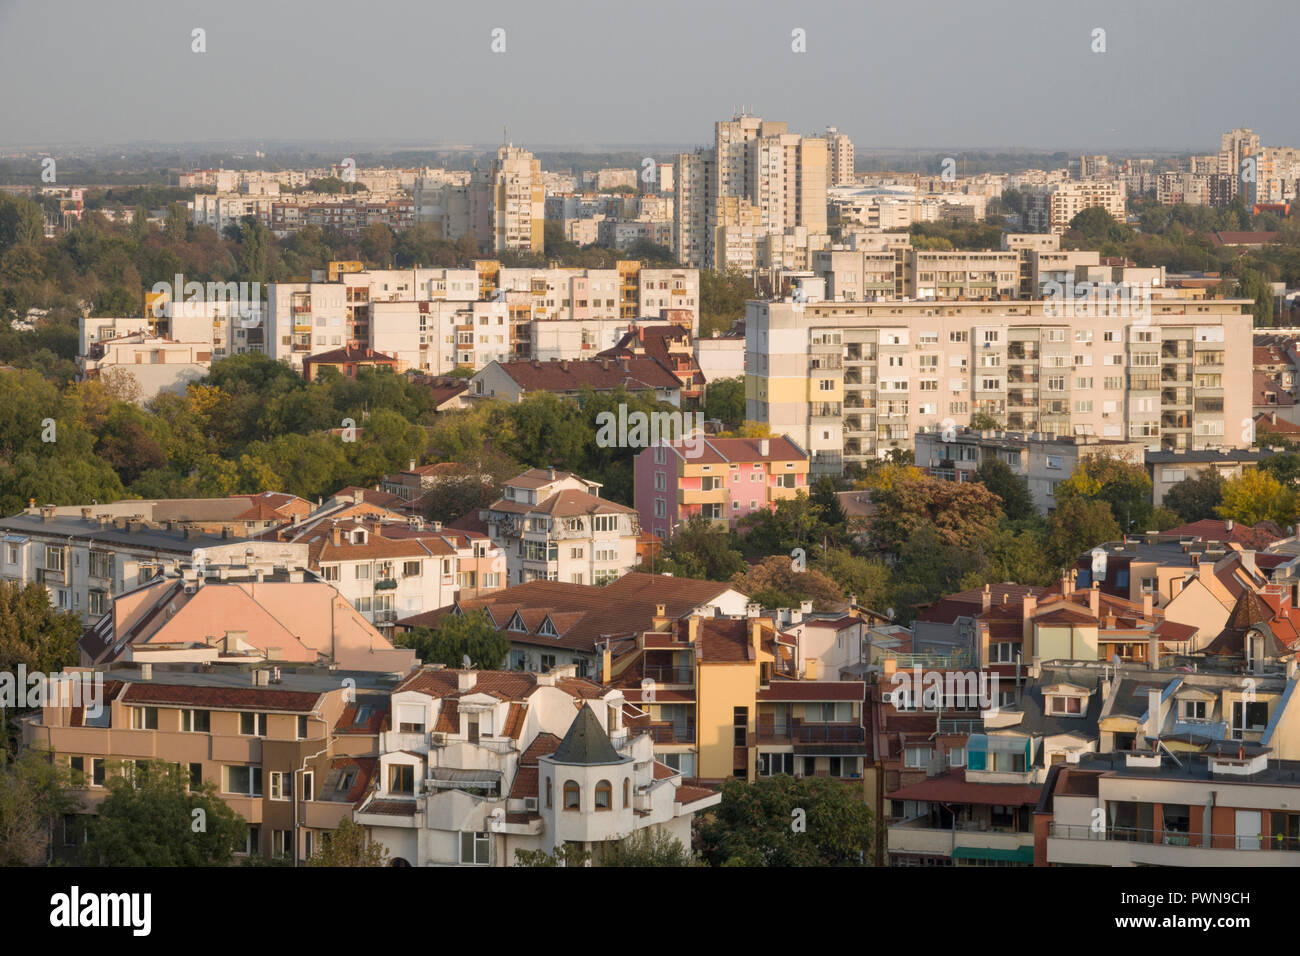 Appartements dans le quartier verdoyant de Plovdiv, Bulgarie Banque D'Images